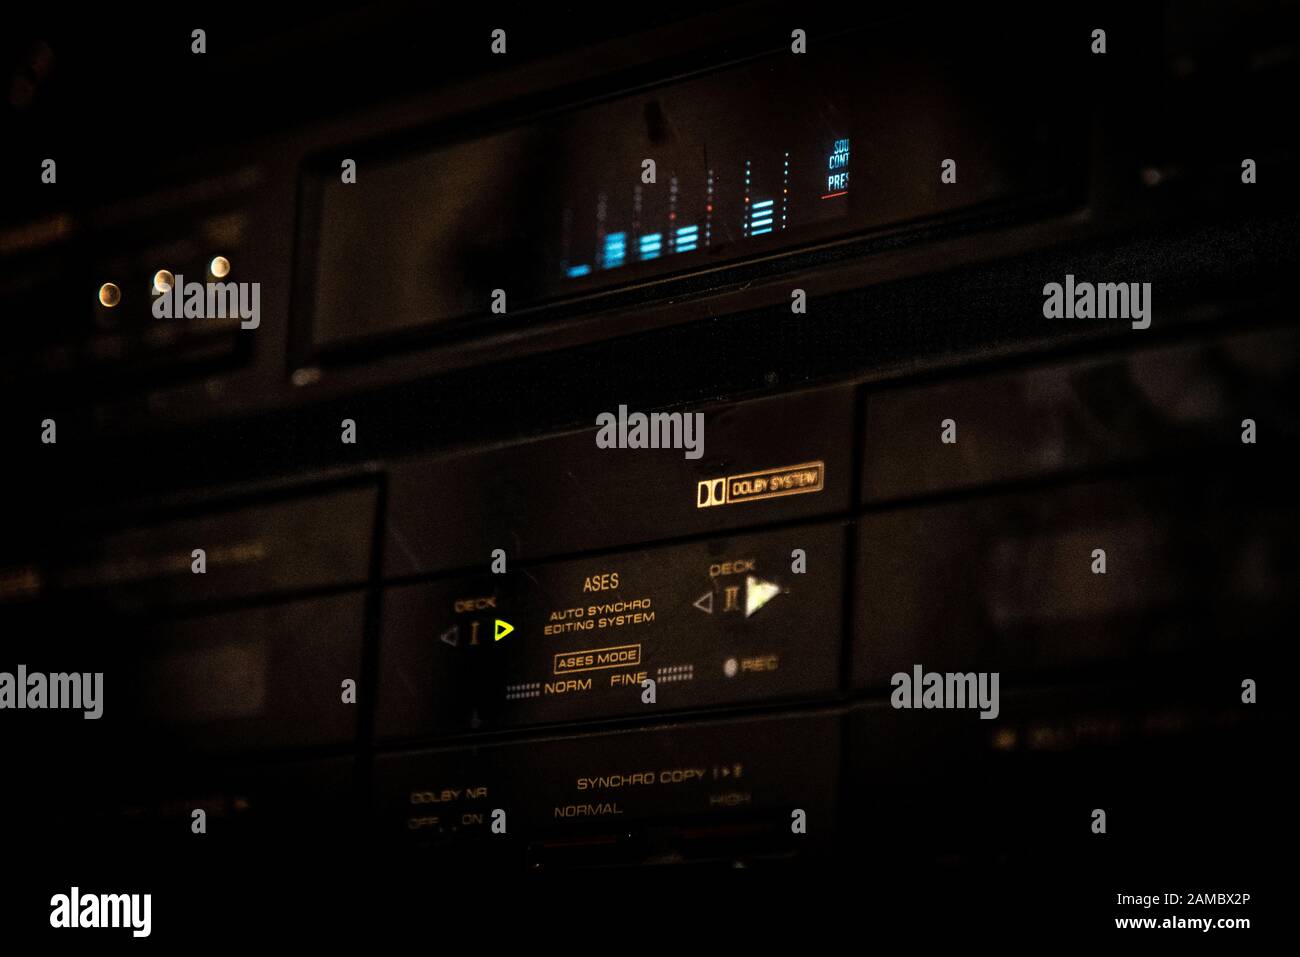 BARILOCHE, ARGENTINIEN, 18. JUNI 2019: Nahaufnahme eines alten Stereo-Musikanlage mit grafischem Lautstärkeregler, der im Dunkeln leuchtet. Stockfoto